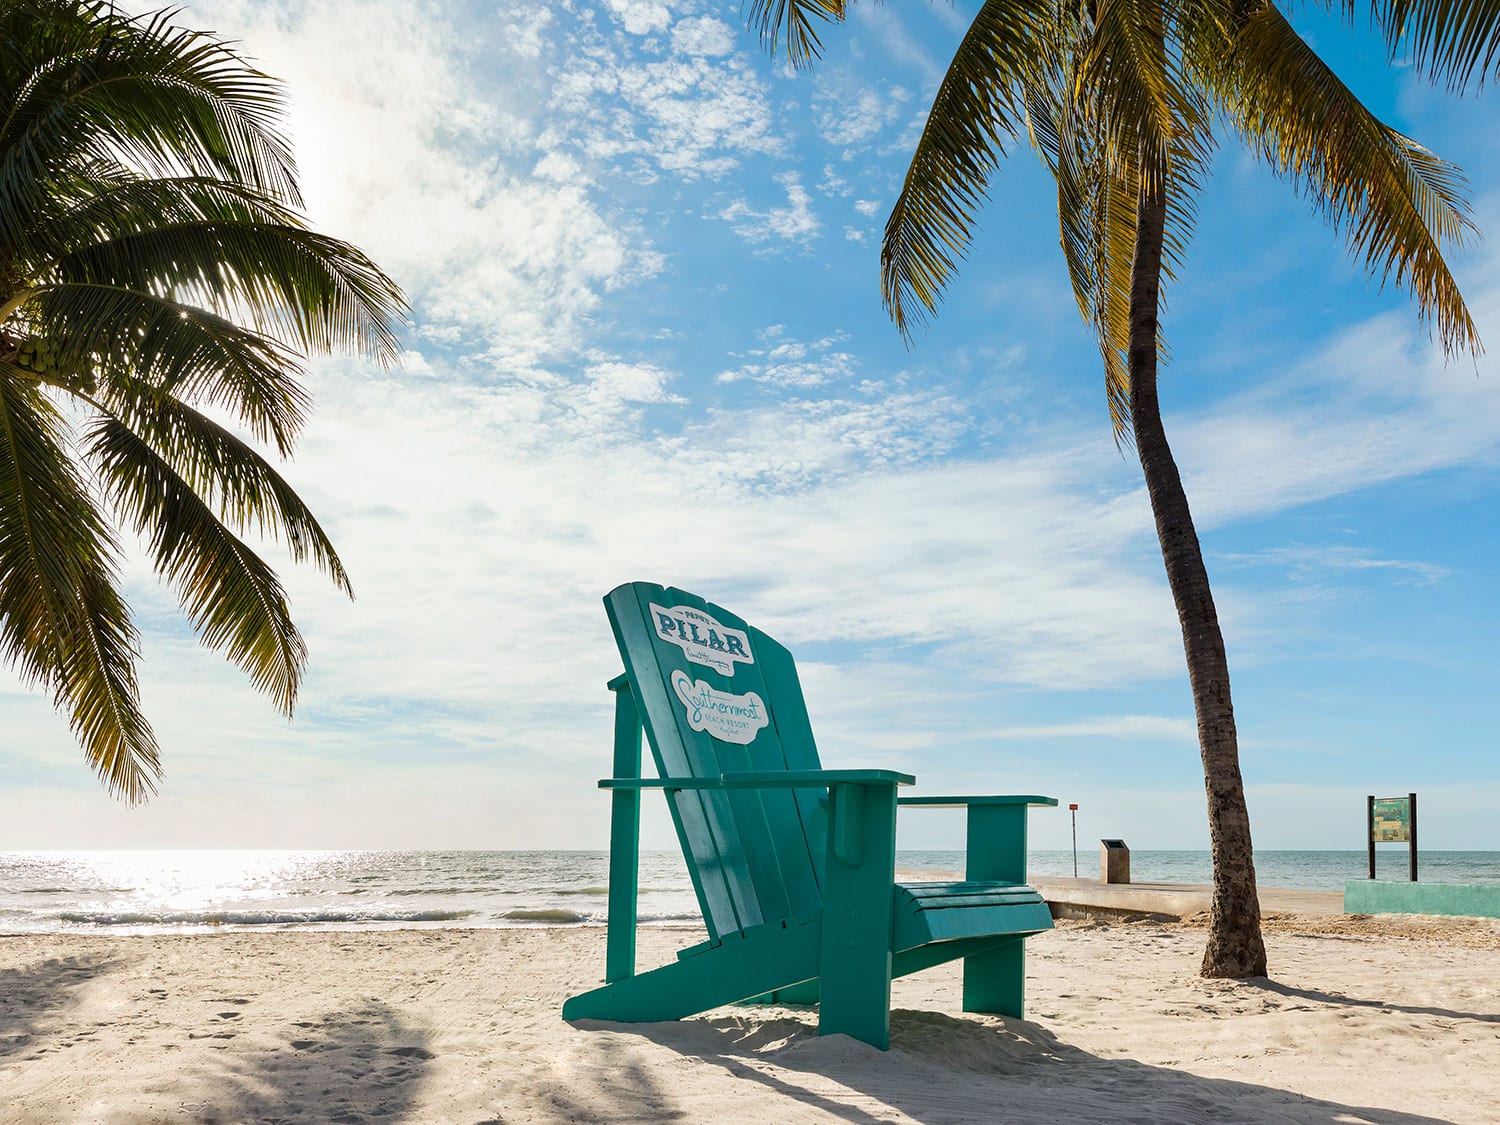 chair on the beach